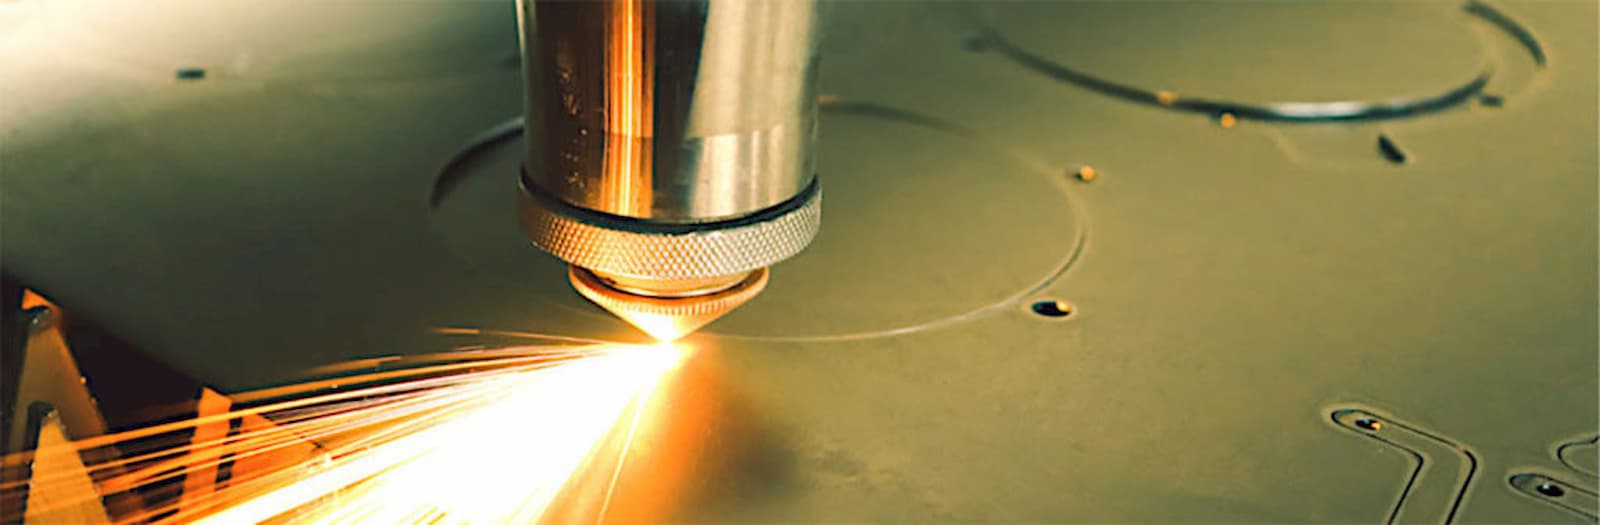 laser incide un materiale di metallo